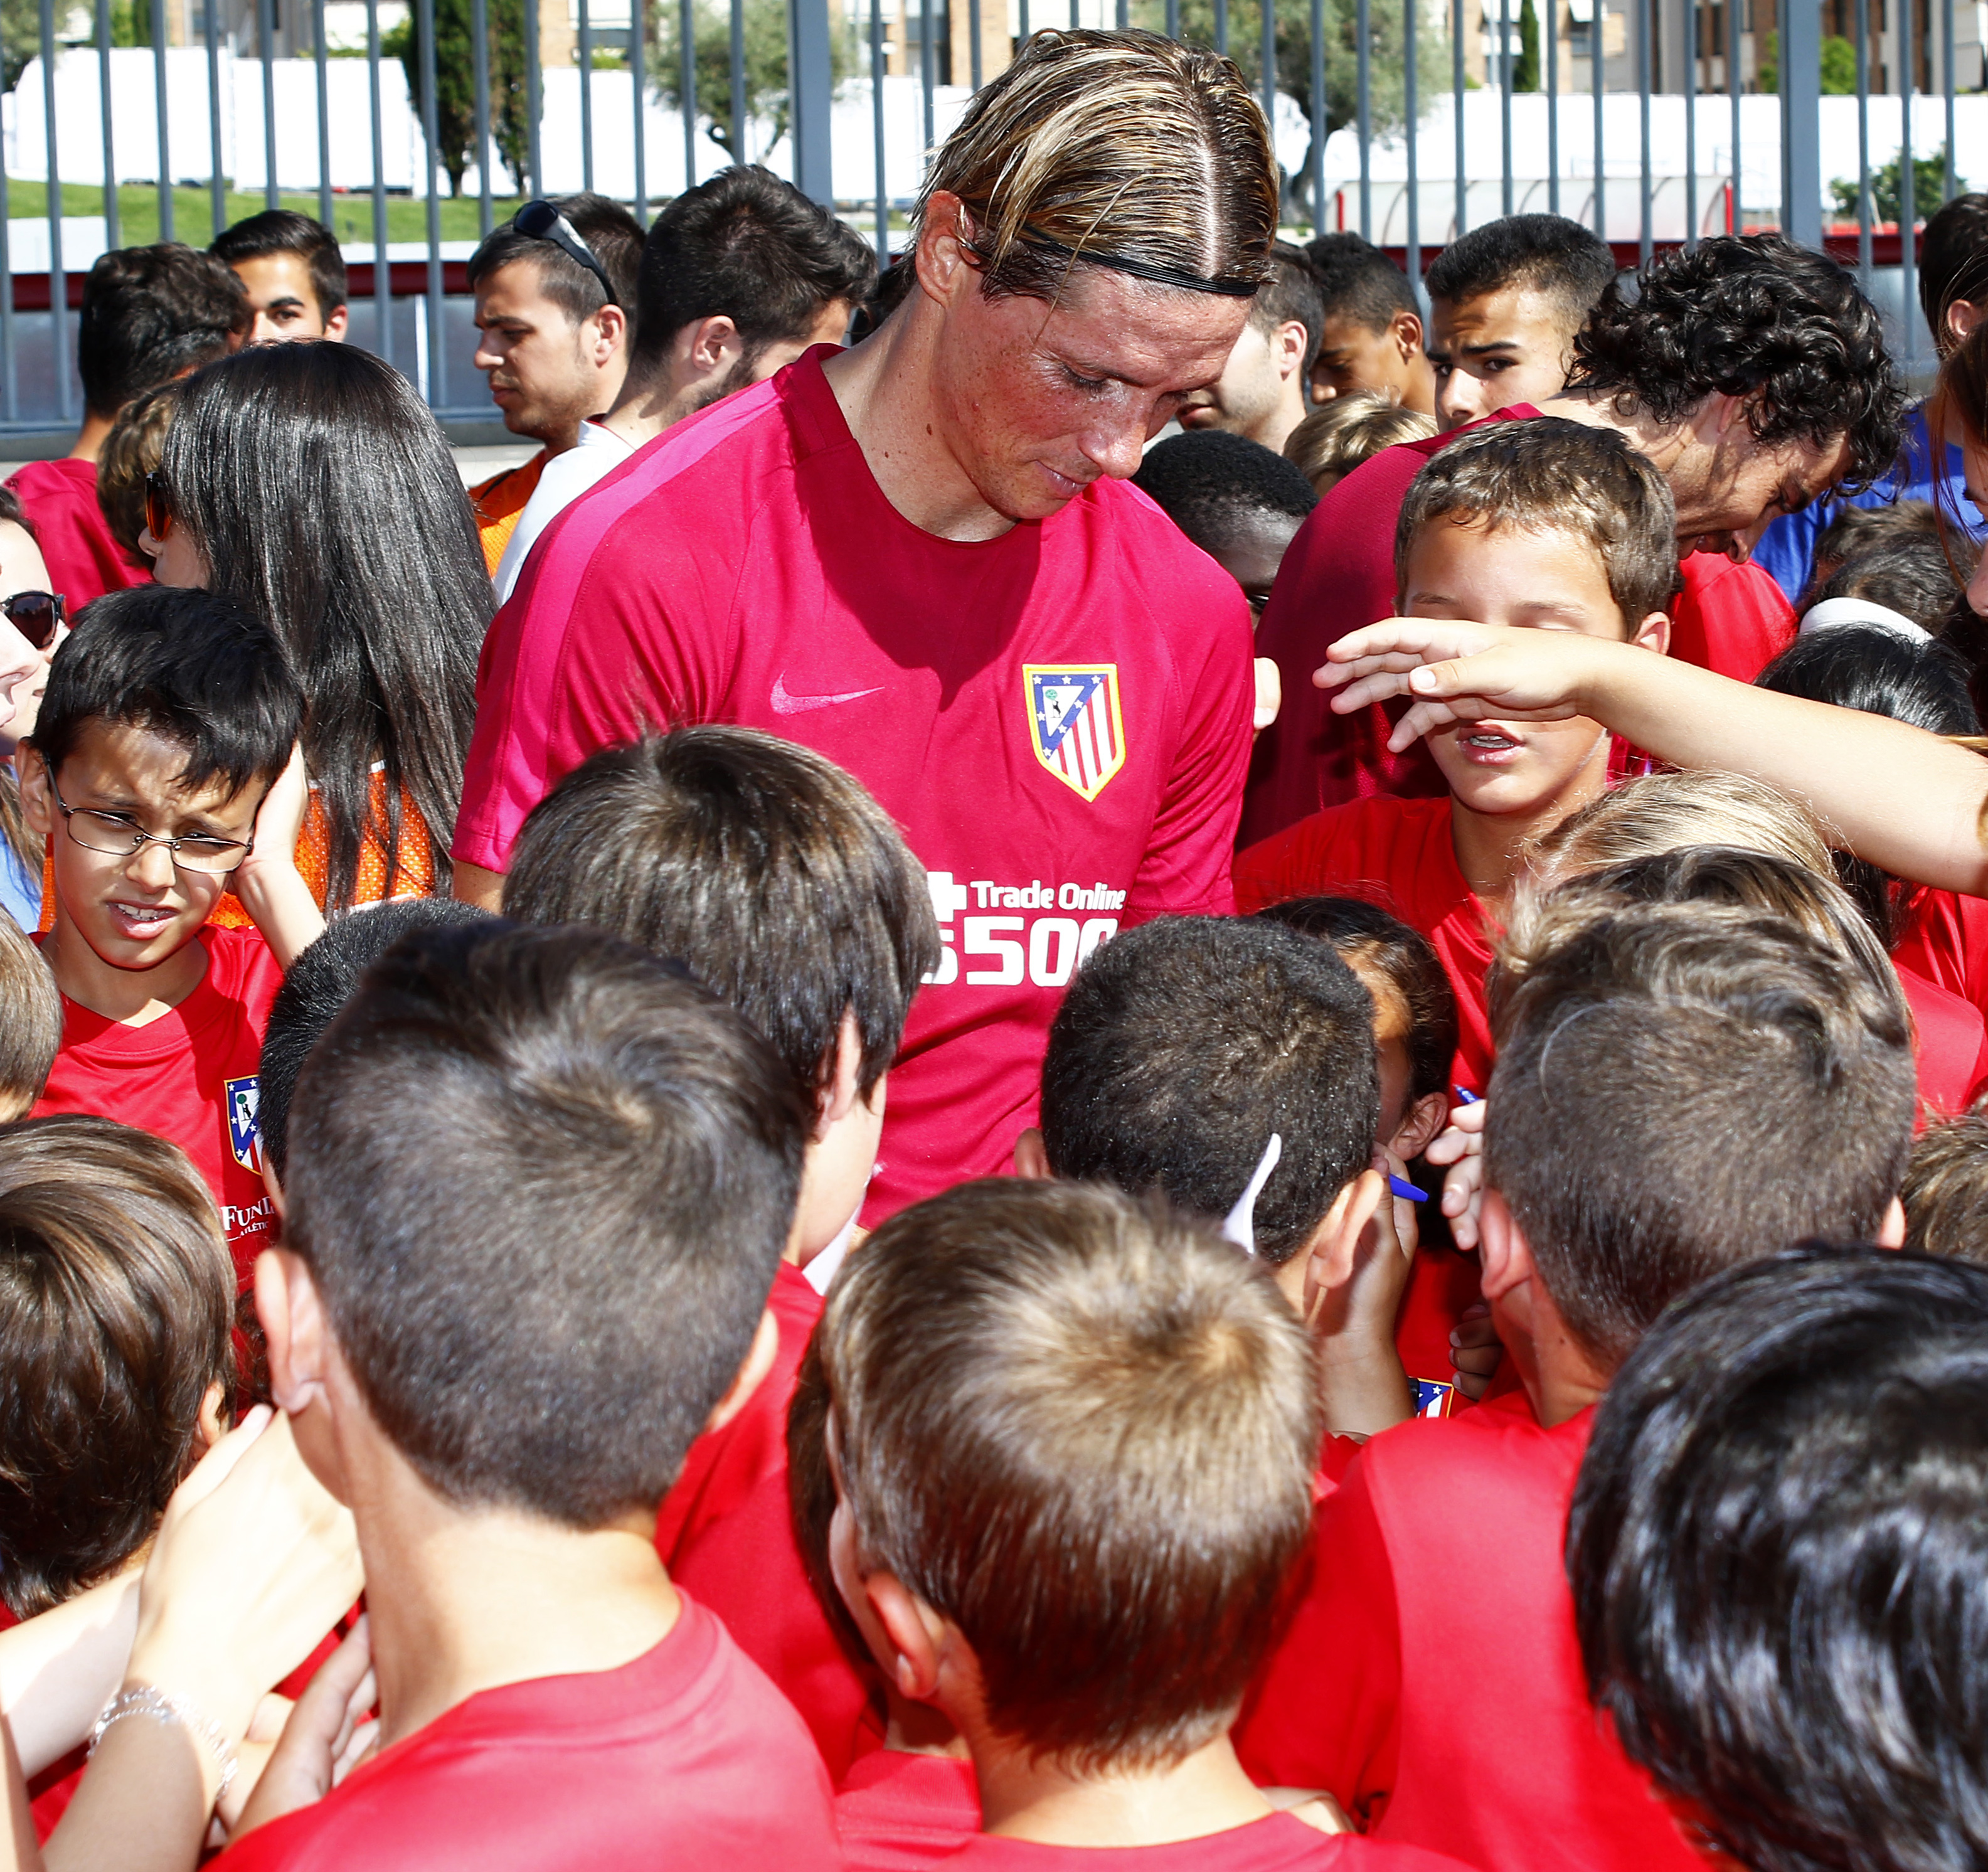 Una temporada más, la Fundación Atlético de Madrid pone en marcha su escuela en Segovia